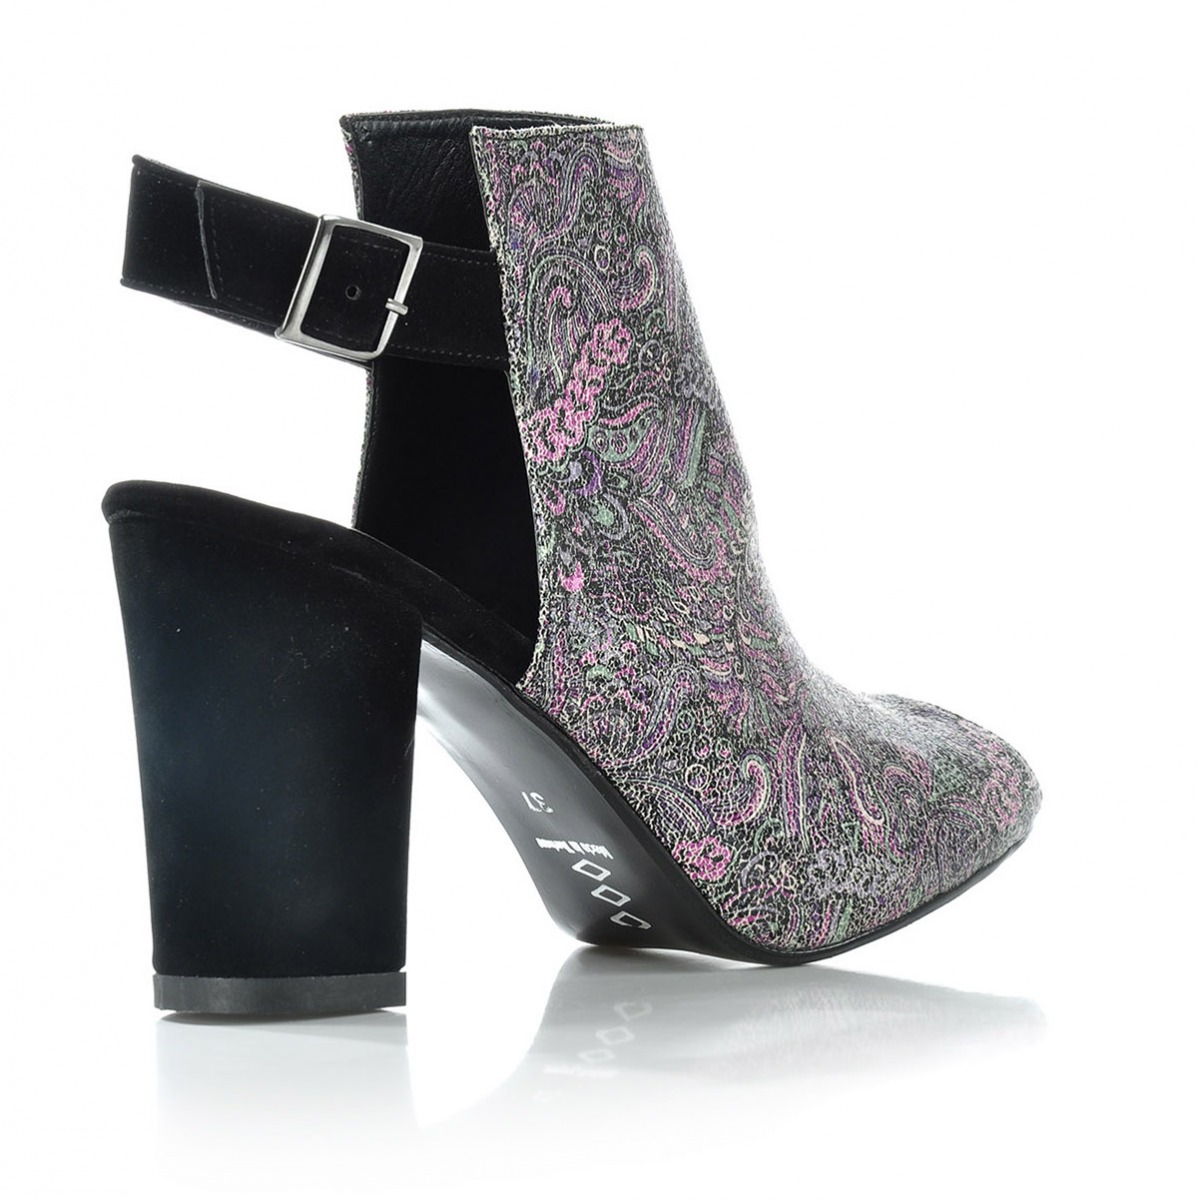 Flo Kadın  Siyah-Süet Klasik Topuklu Ayakkabı VZN-126Y. 3